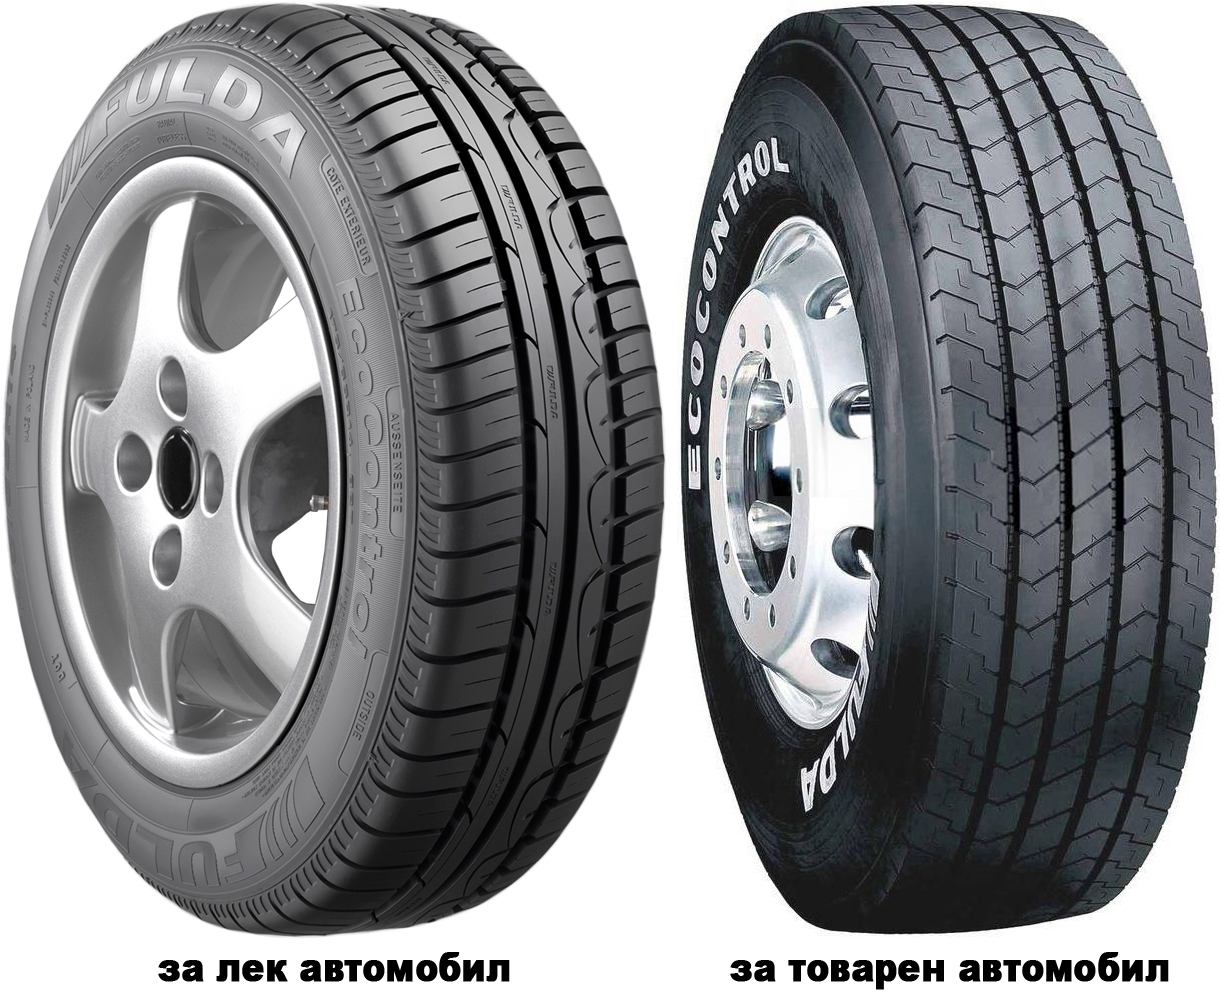 Автомобилни гуми FULDA ECOCONTROL 155/80 R13 79T